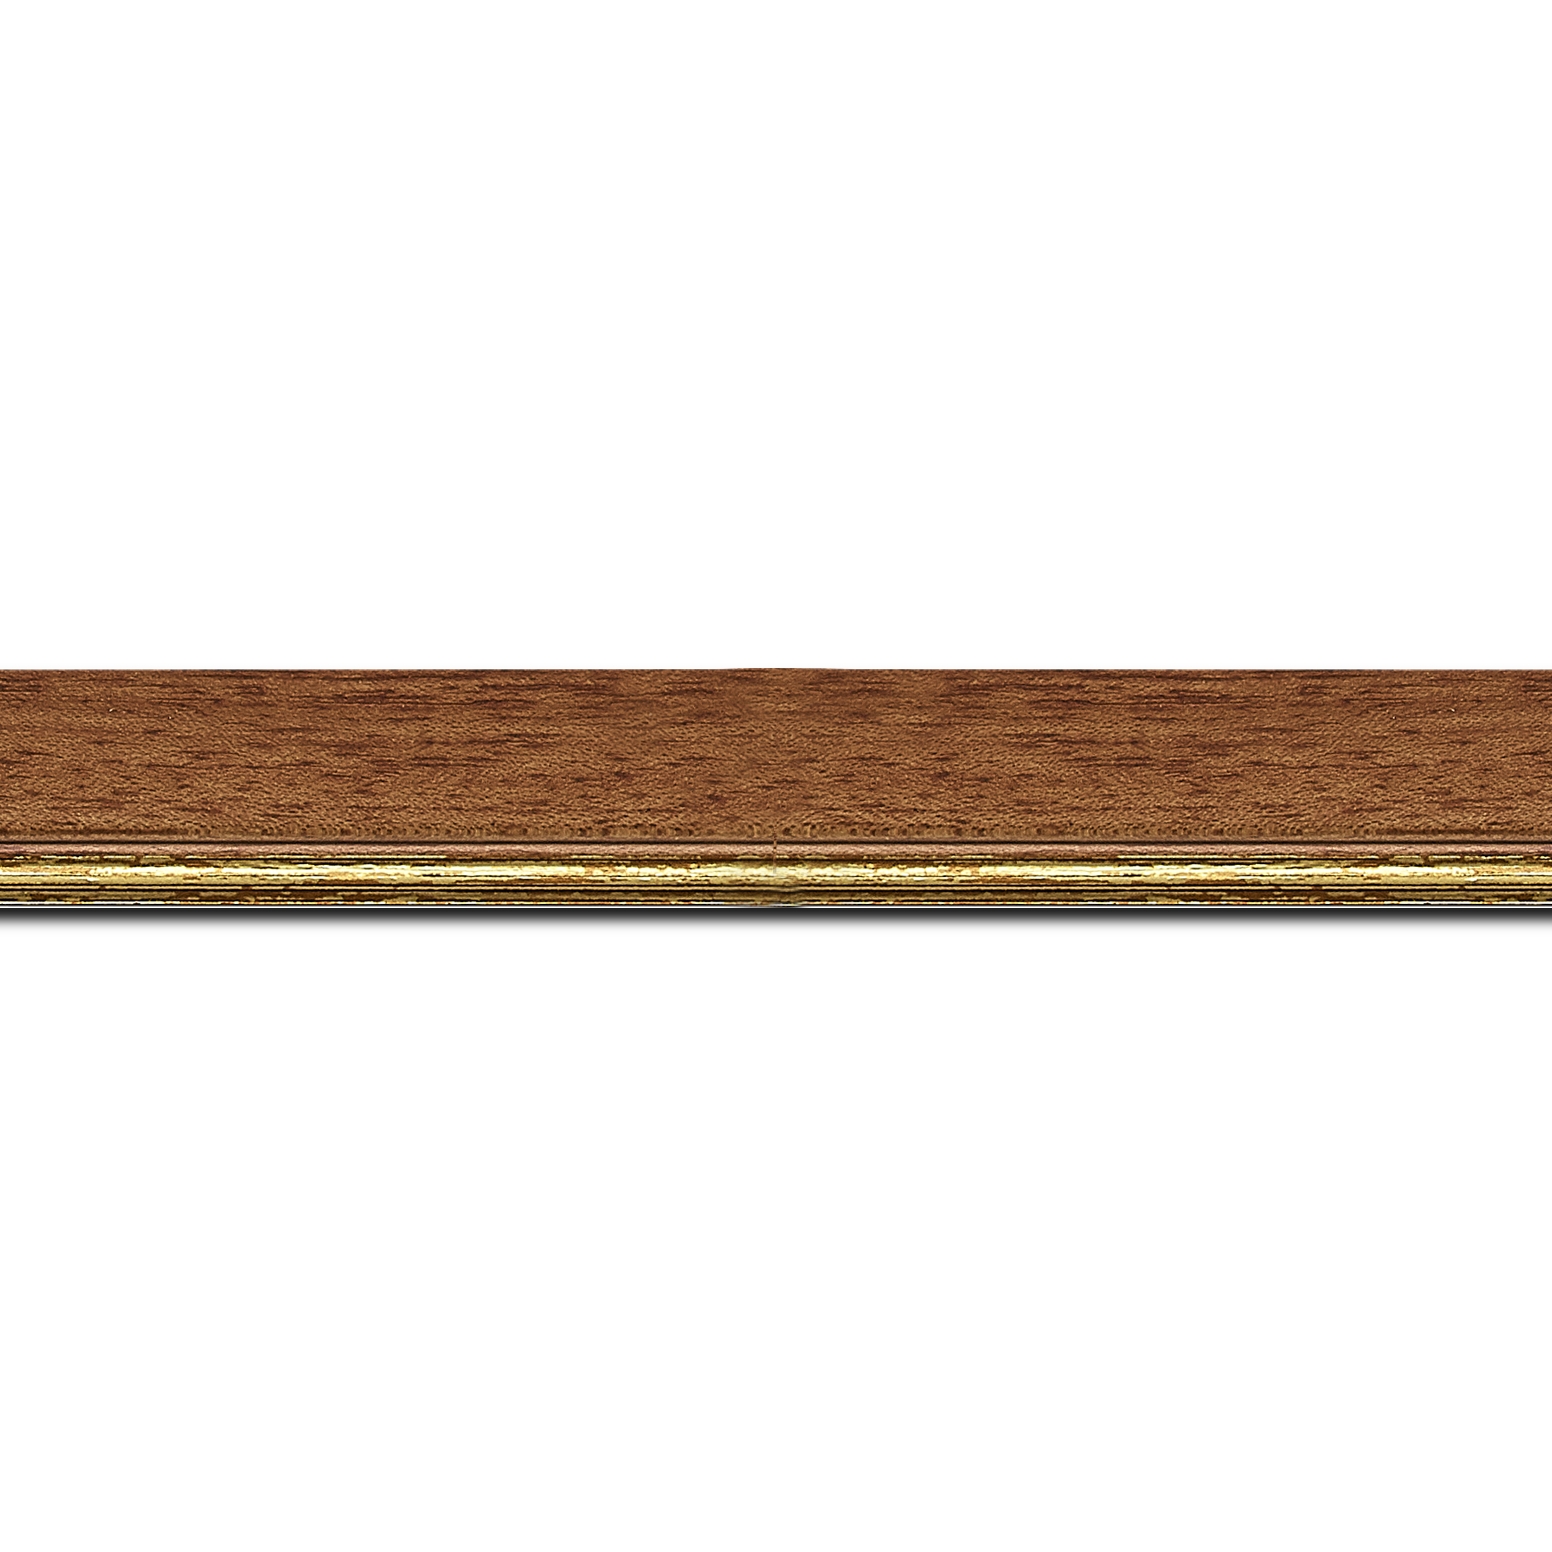 Baguette longueur 1.40m bois profil plat largeur 2.5cm couleur marron ton bois filet or